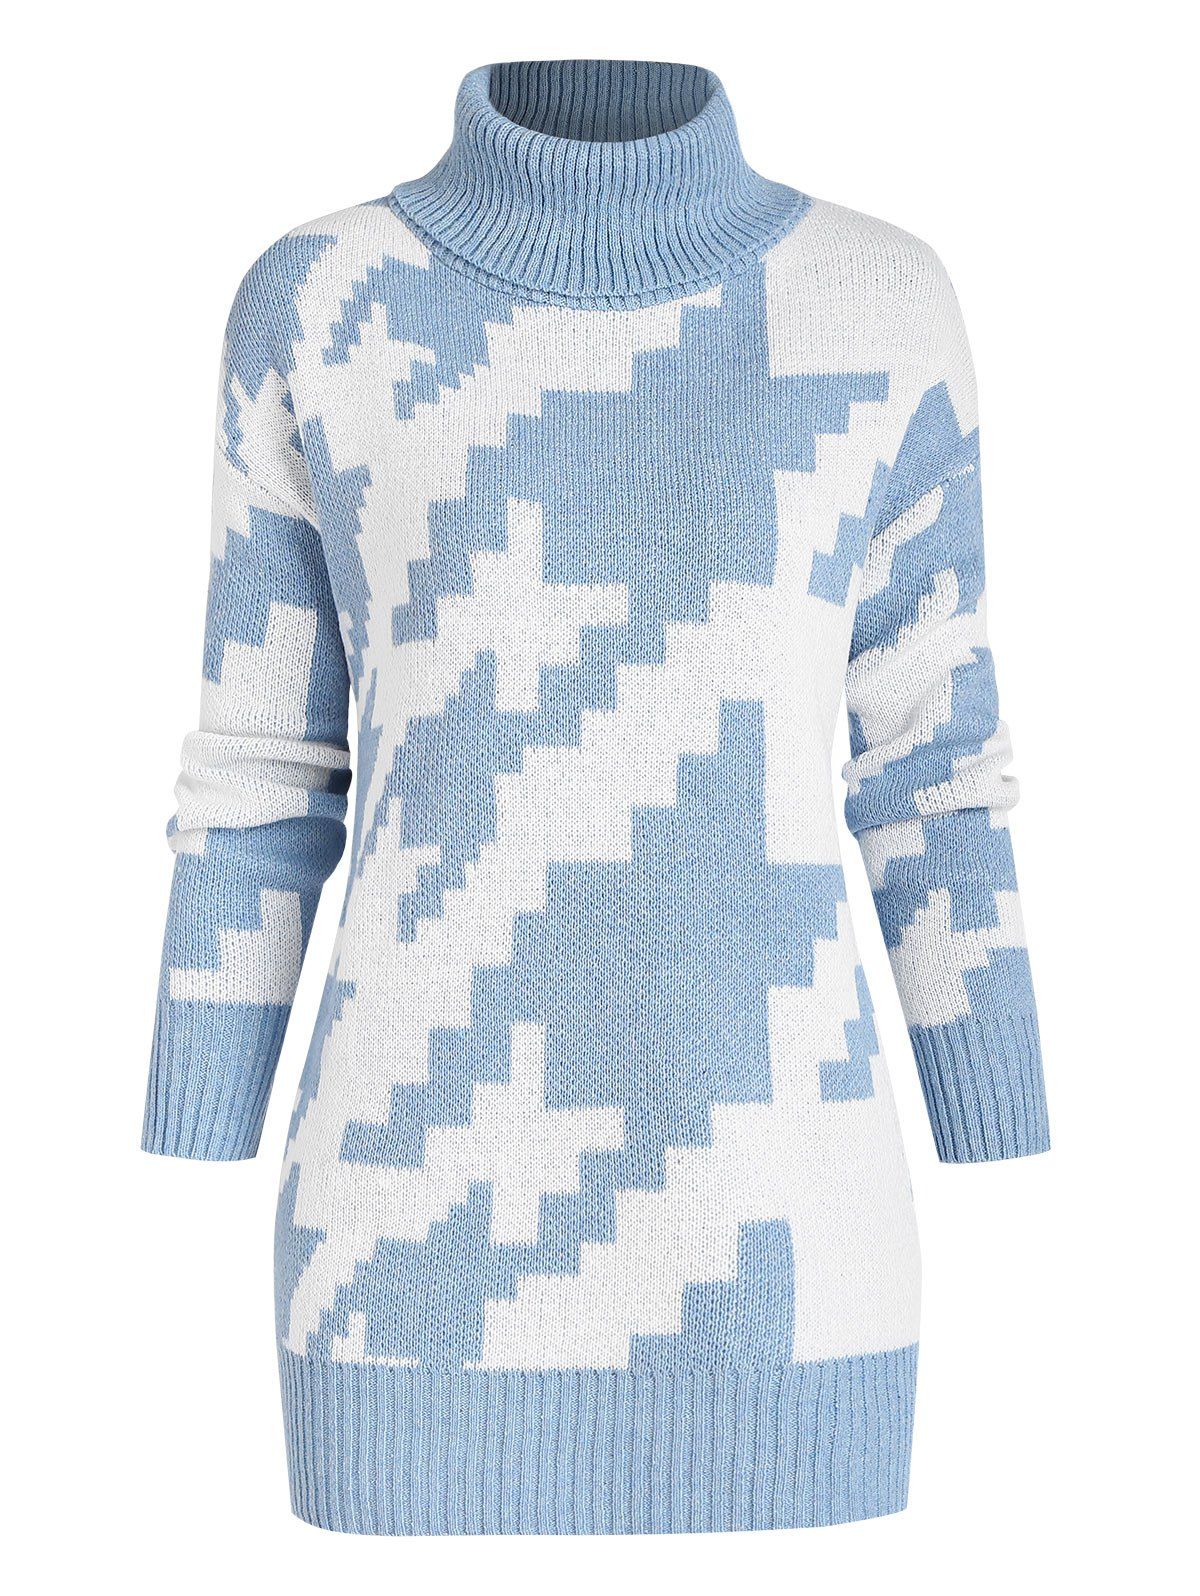 Turtleneck Geometric Jacquard Sweater - LIGHT BLUE L